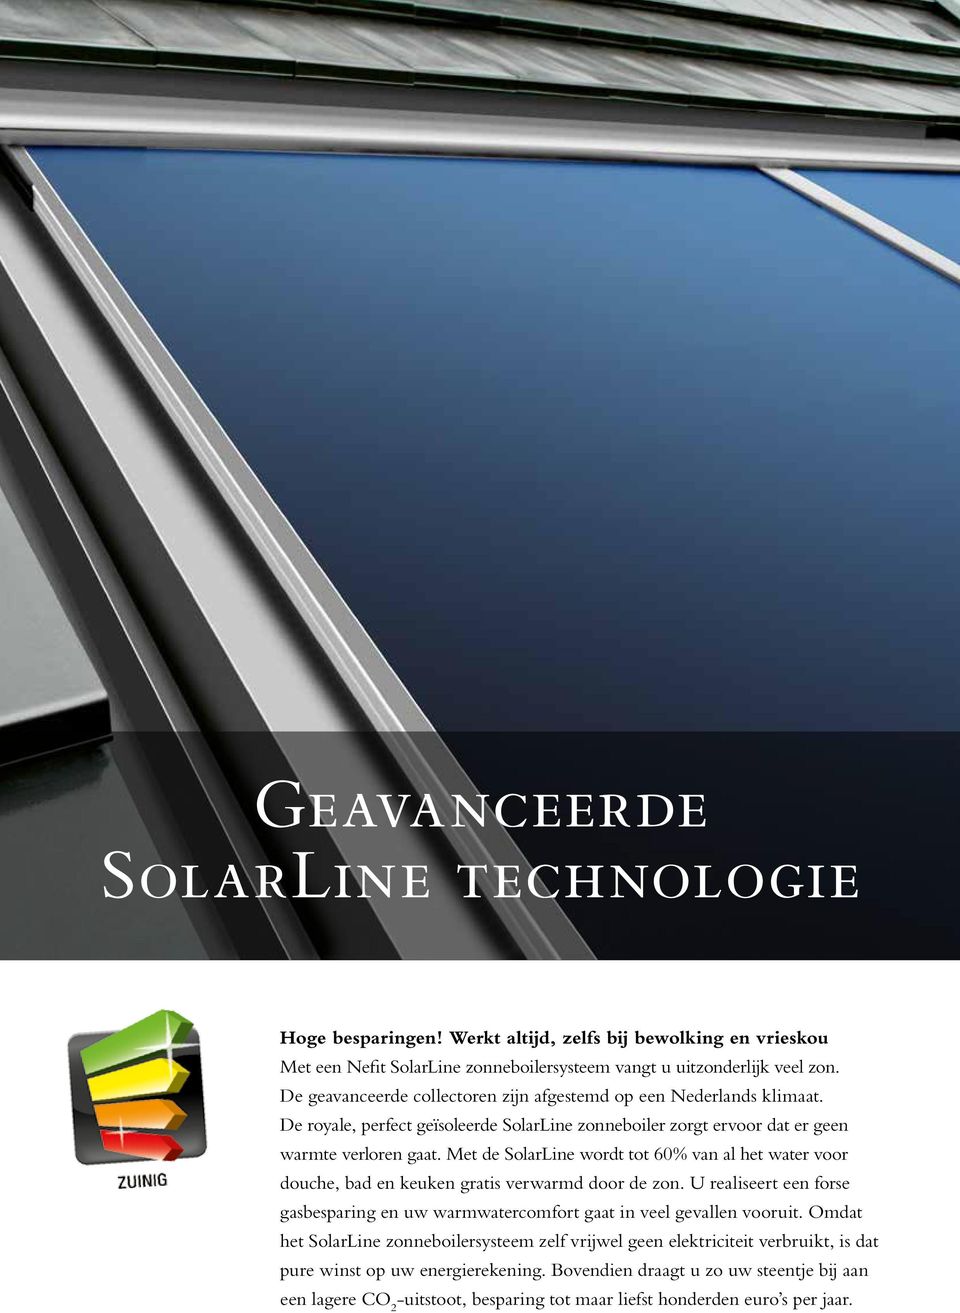 Met de SolarLine wordt tot 60% van al het water voor douche, bad en keuken gratis verwarmd door de zon. U realiseert een forse gasbesparing en uw warmwatercomfort gaat in veel gevallen vooruit.